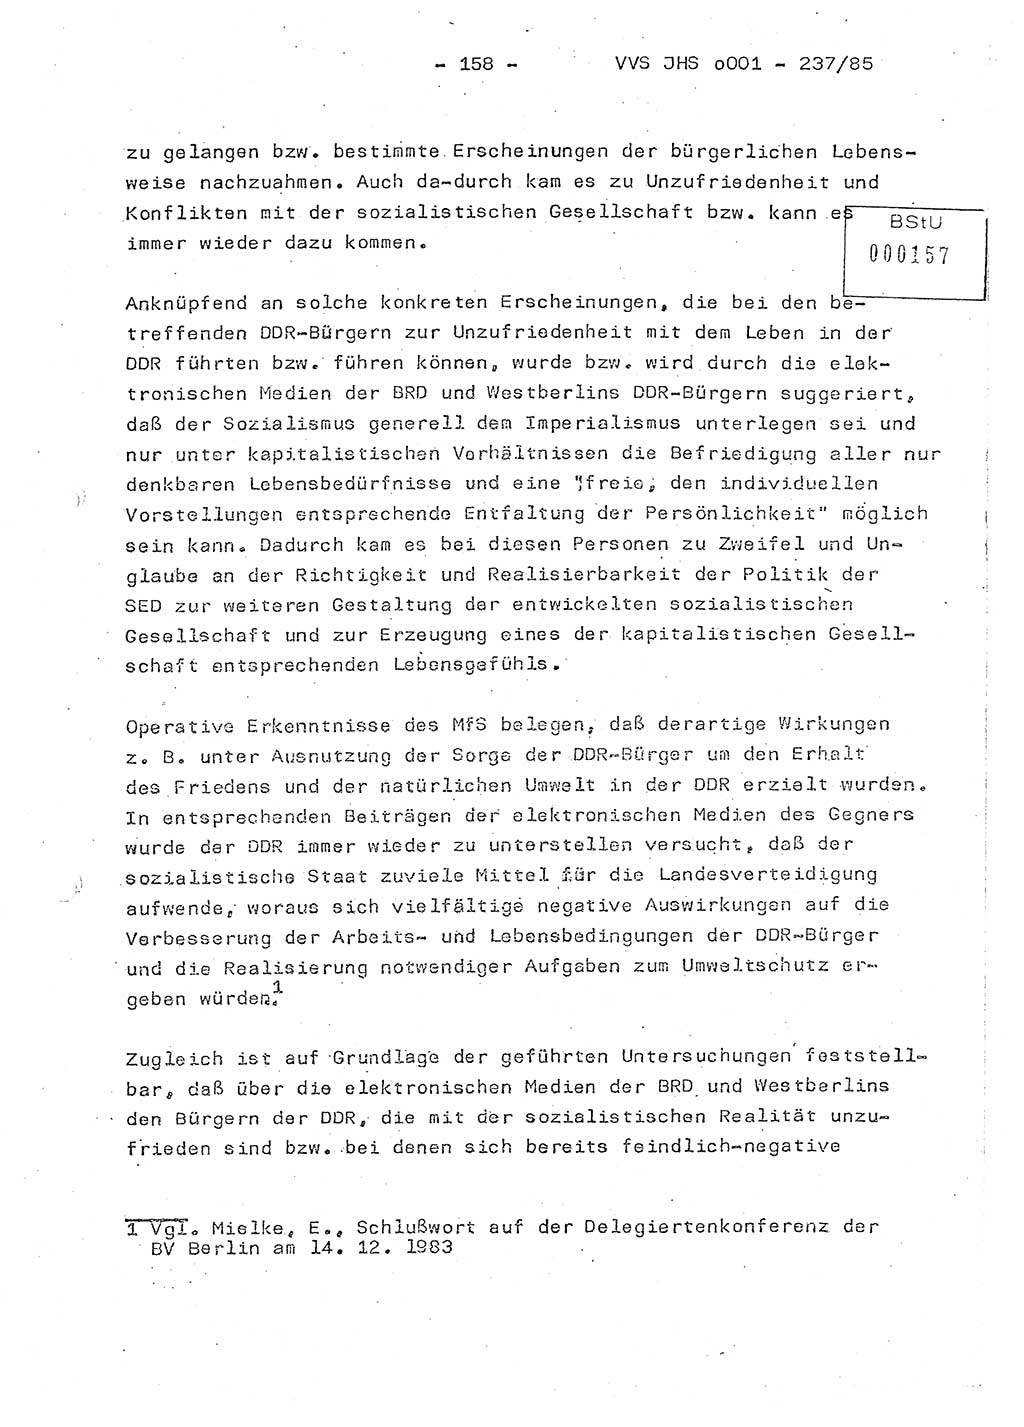 Dissertation Oberstleutnant Peter Jakulski (JHS), Oberstleutnat Christian Rudolph (HA Ⅸ), Major Horst Böttger (ZMD), Major Wolfgang Grüneberg (JHS), Major Albert Meutsch (JHS), Ministerium für Staatssicherheit (MfS) [Deutsche Demokratische Republik (DDR)], Juristische Hochschule (JHS), Vertrauliche Verschlußsache (VVS) o001-237/85, Potsdam 1985, Seite 158 (Diss. MfS DDR JHS VVS o001-237/85 1985, S. 158)